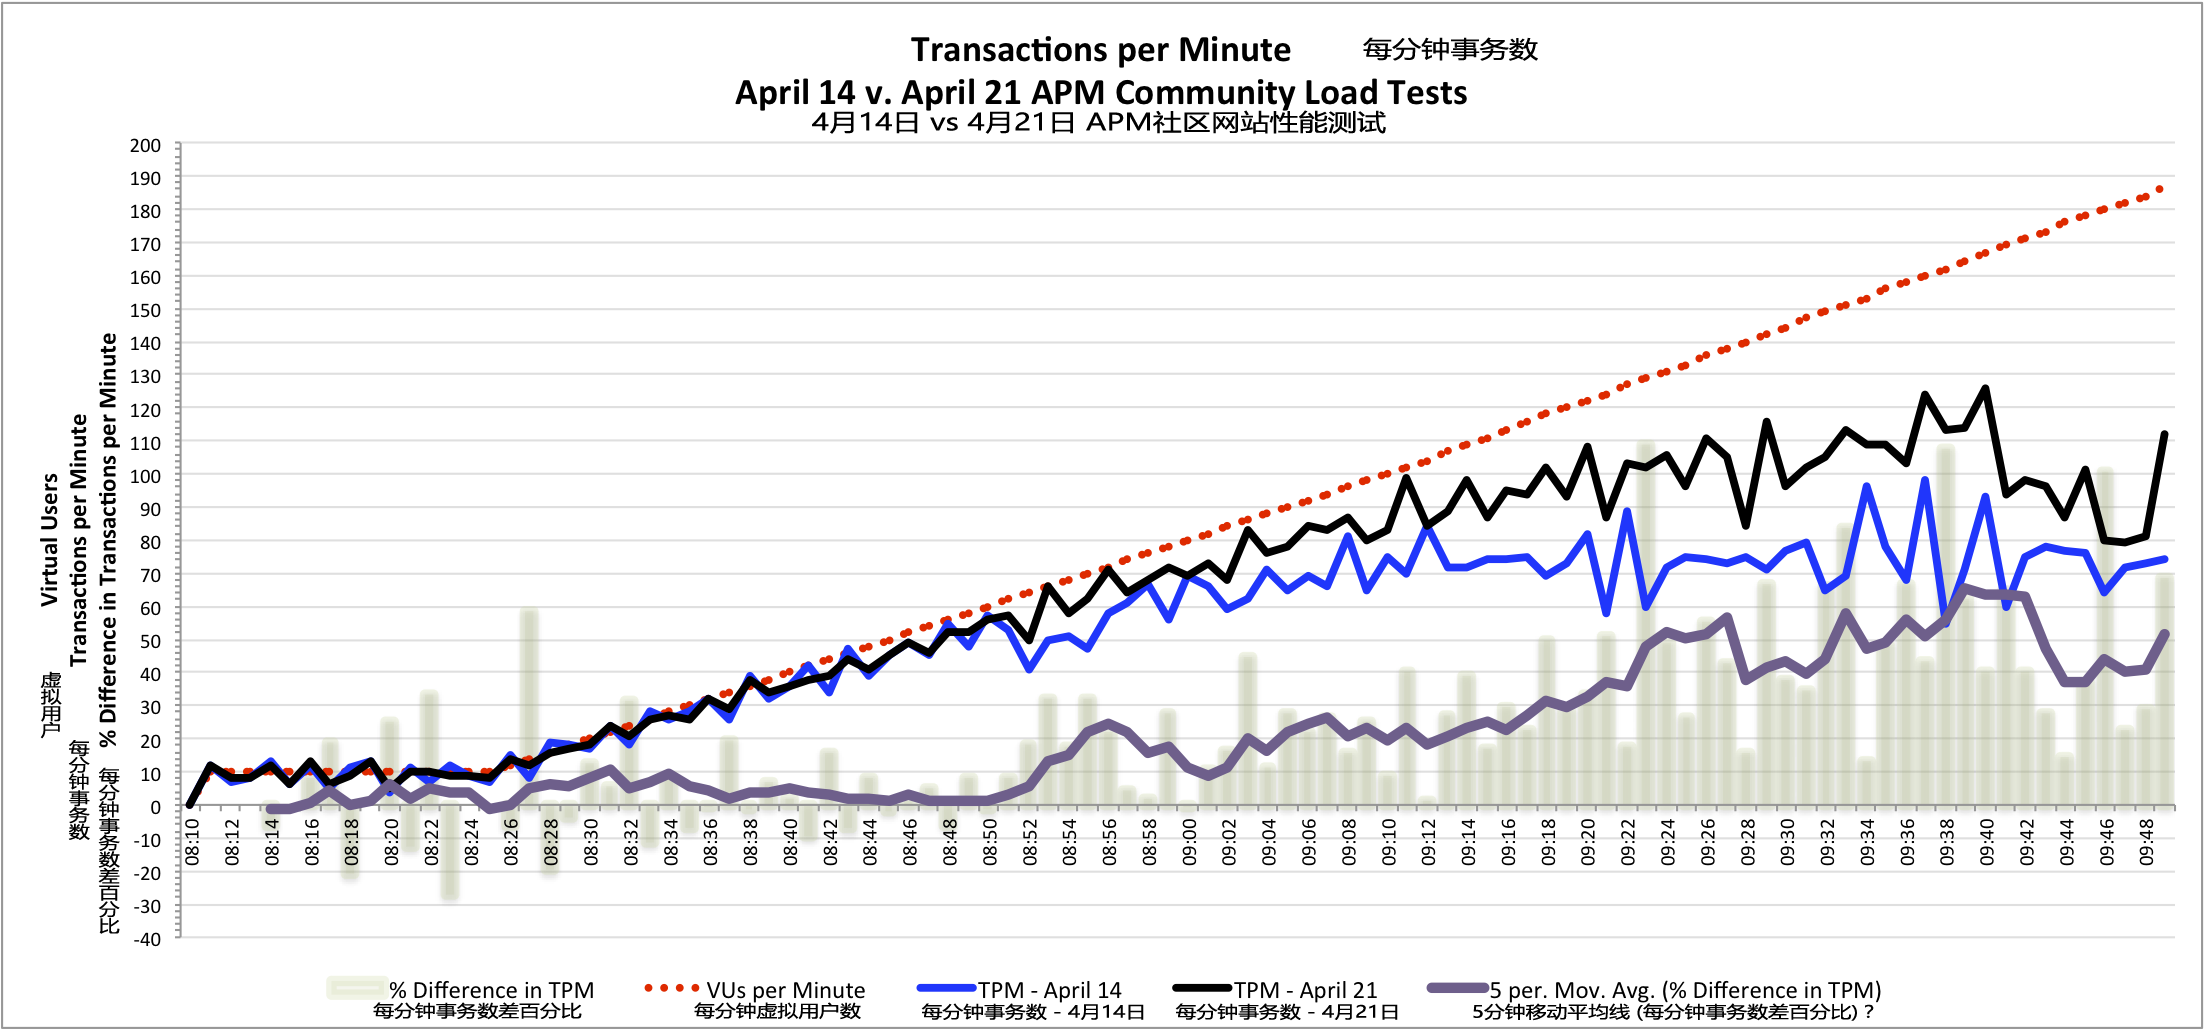 每分钟事务数对比表明在4月21日的APM社区网站负载测试的提升 - 更多的每分钟事务数